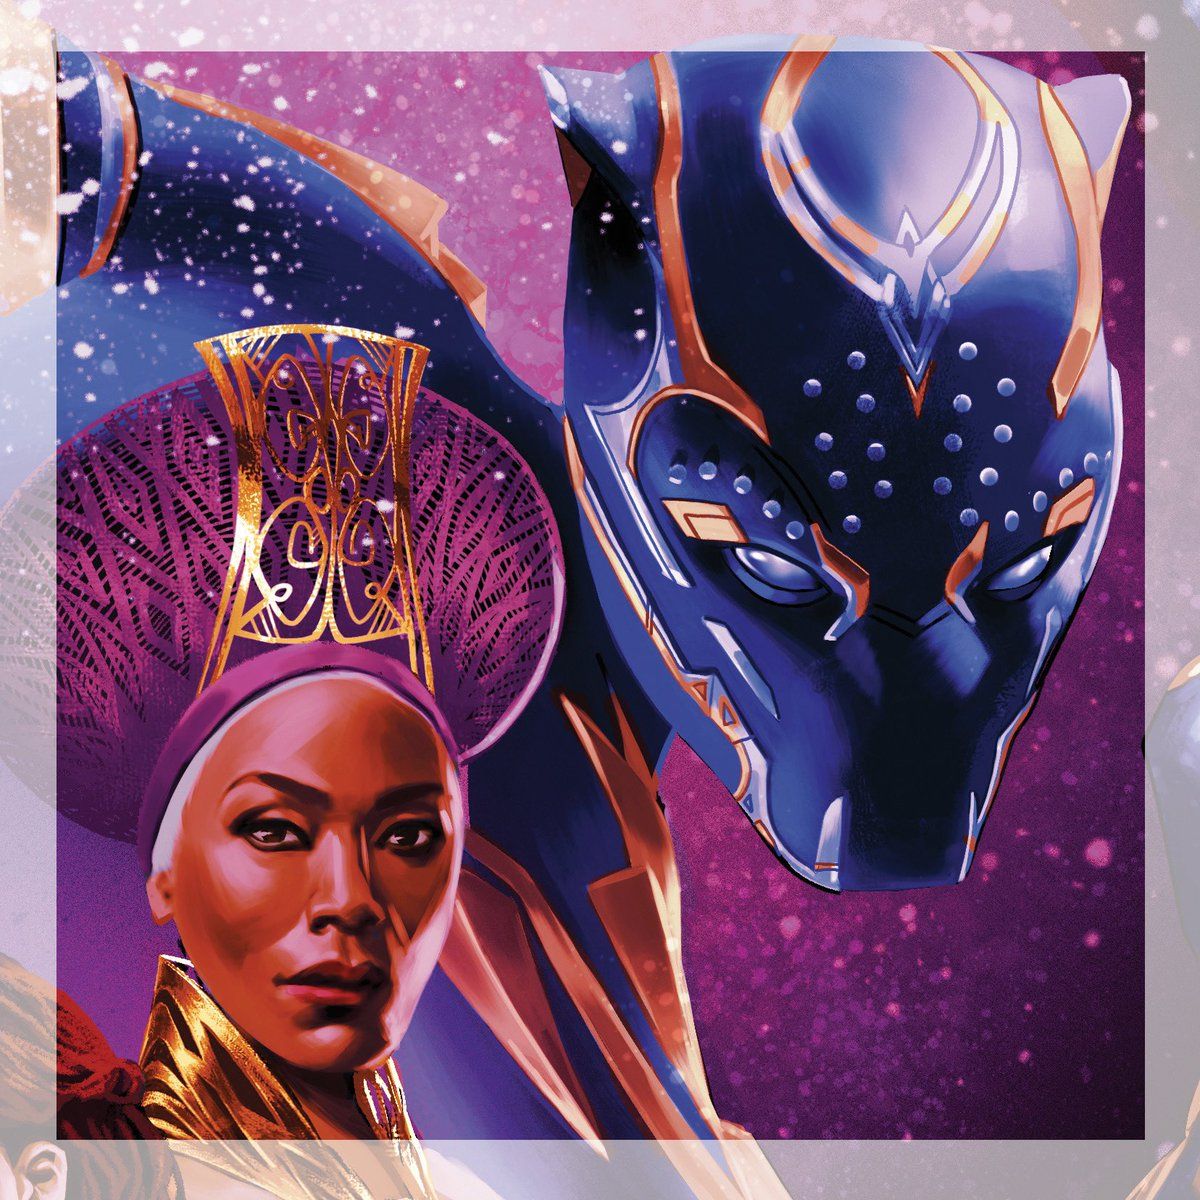 Artwork by Angela Bassett on the vinyl cover for Black Panther Wakanda Forever